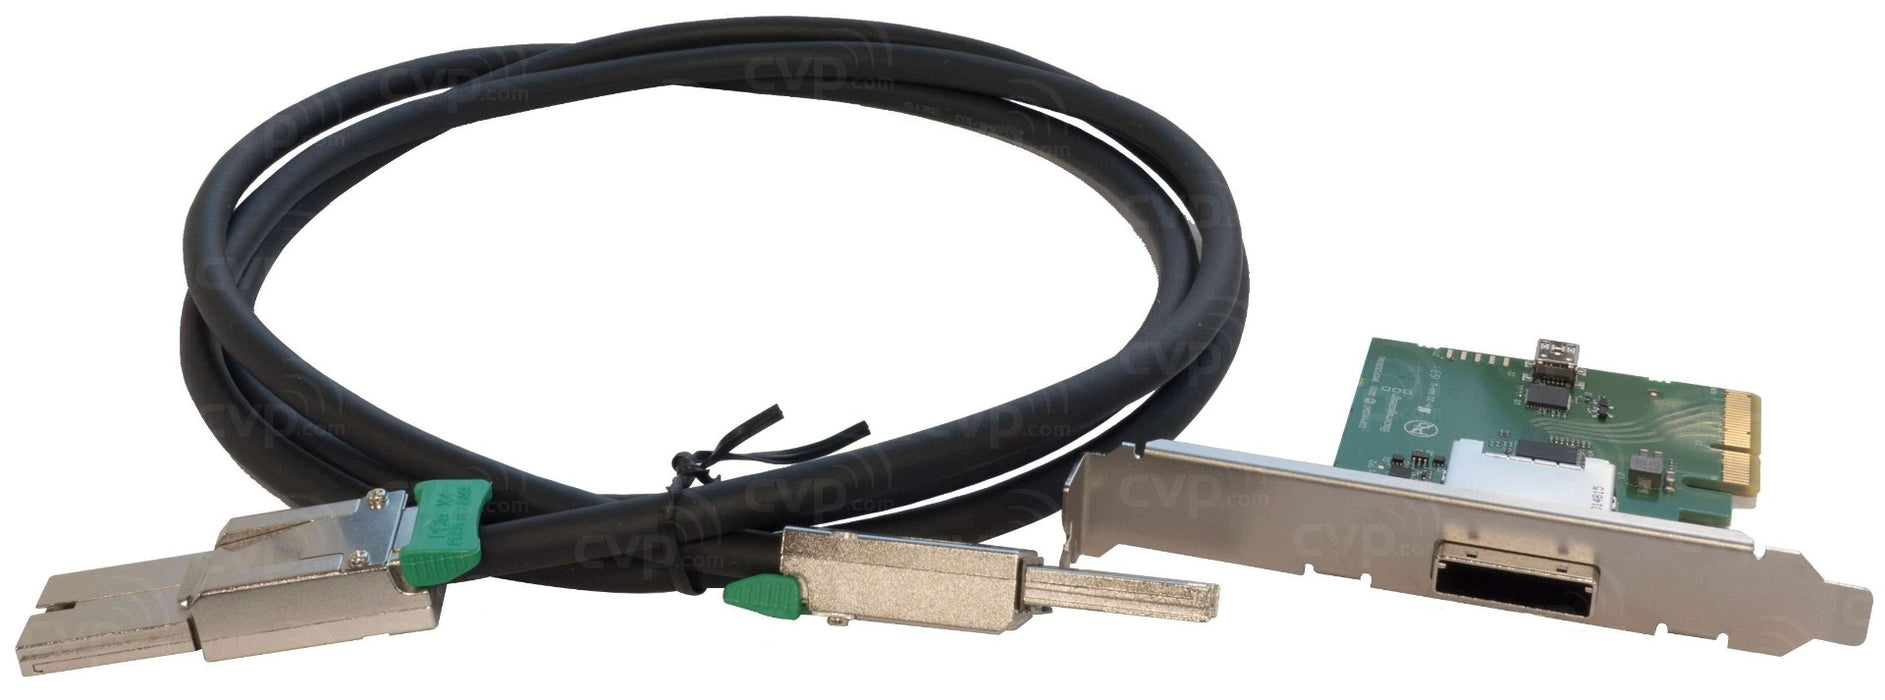 Blackmagic PCIe Cable Kit for UltraStudio 4K Extreme Models - New Media